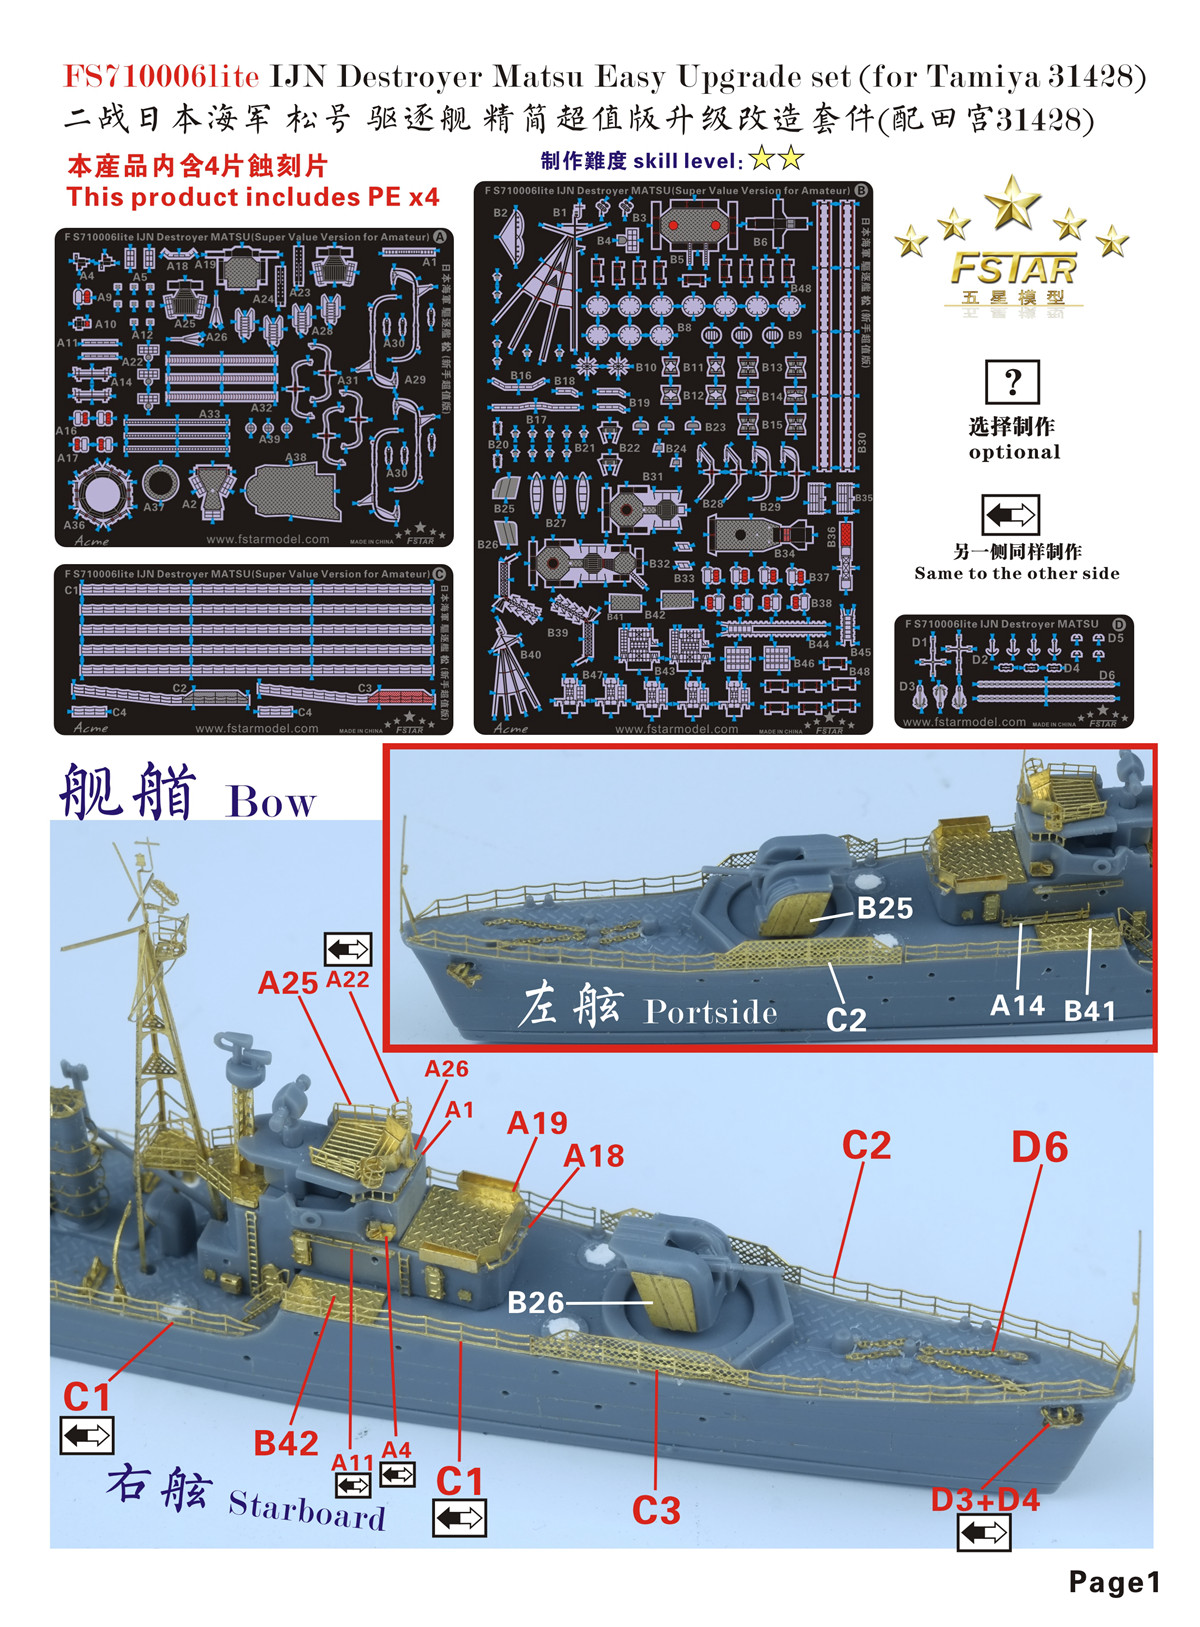 1/700 二战日本海军松号驱逐舰精简版升级改造套件(配田宫31428)